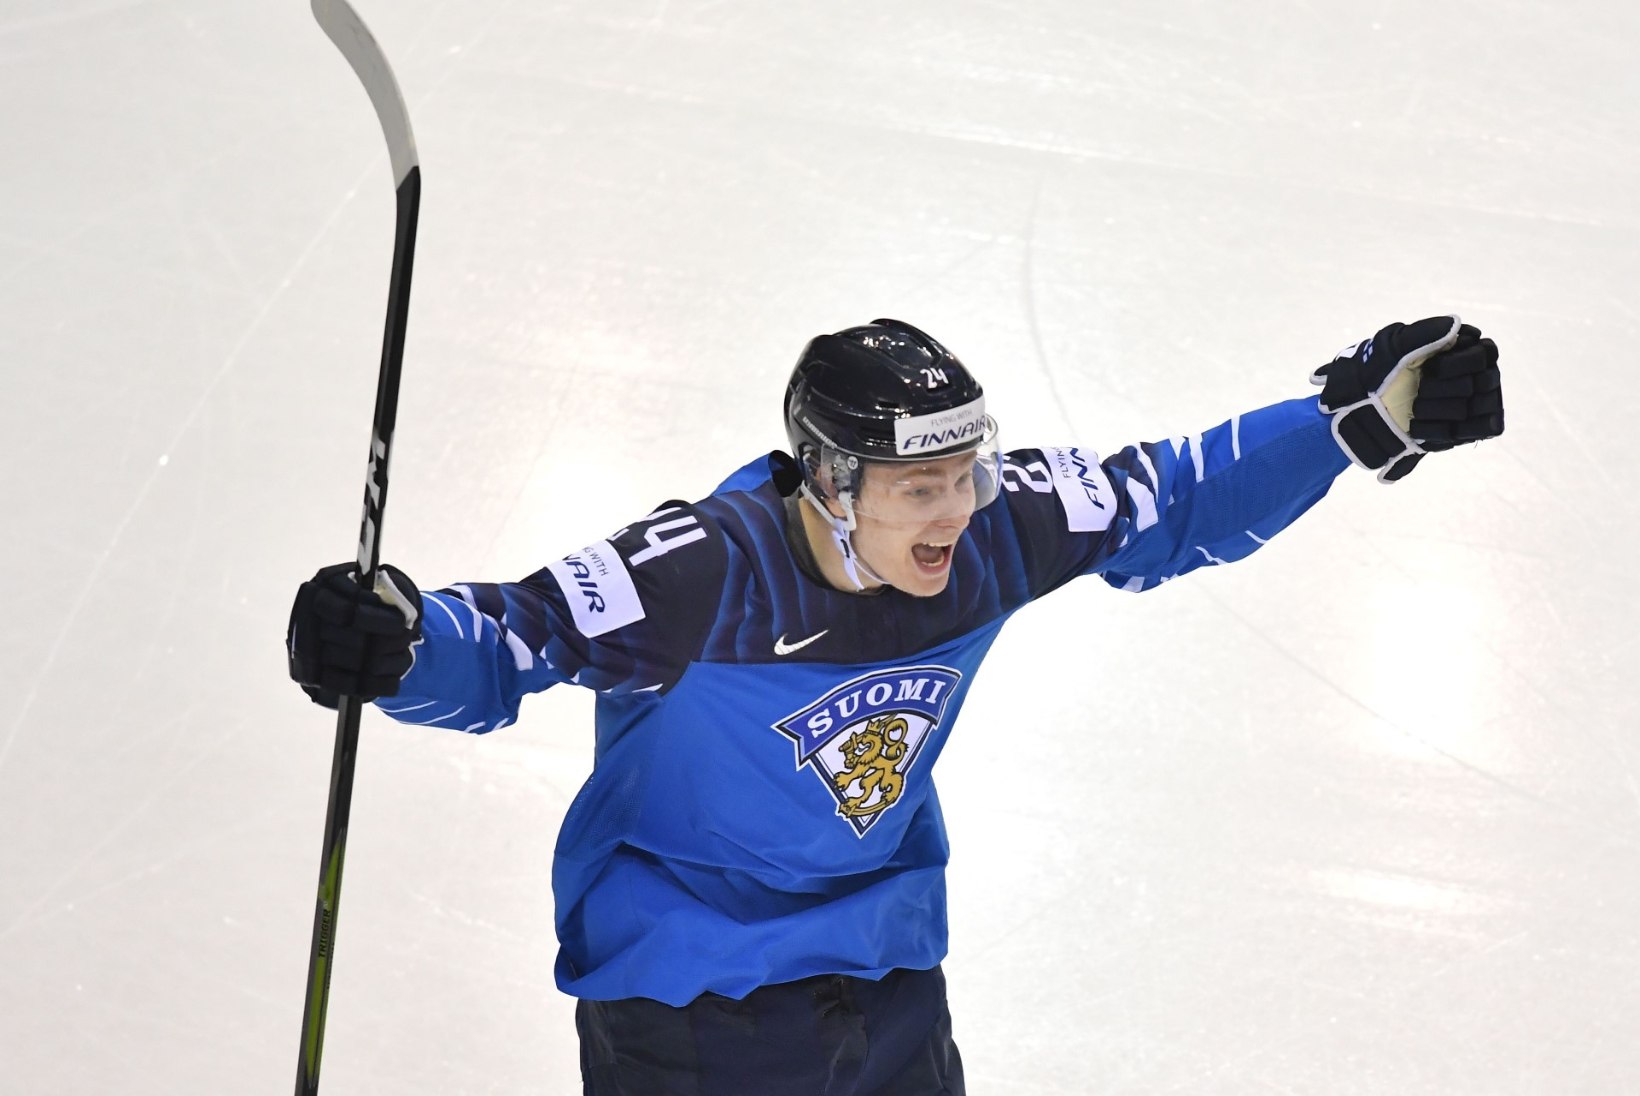 VÕIMSAD MEHED! Kaks Soomega MMil triumfeerinud mängijat tegid lahedat ajalugu